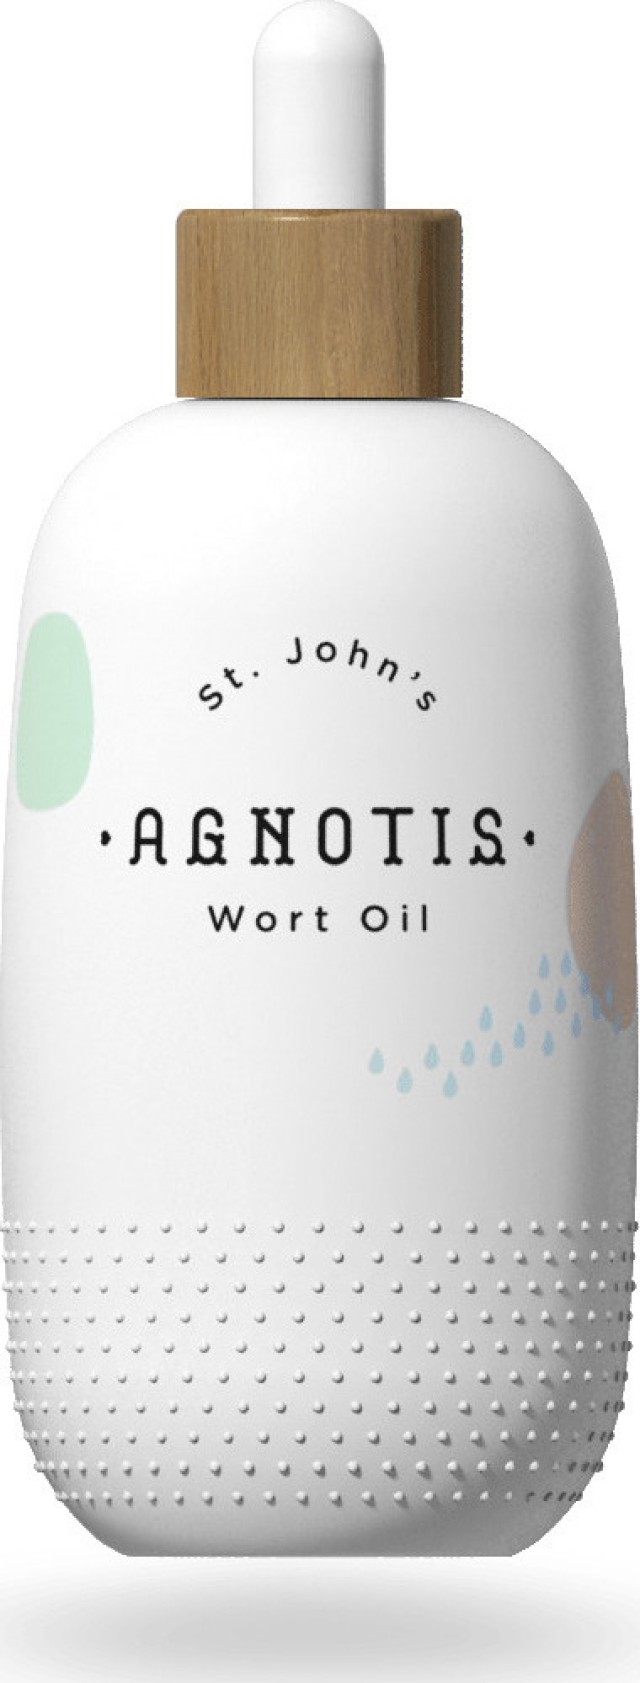 Agnotis St. John's Wort Oil Βρεφικό Λάδι Σπαθόλαδο 150ml